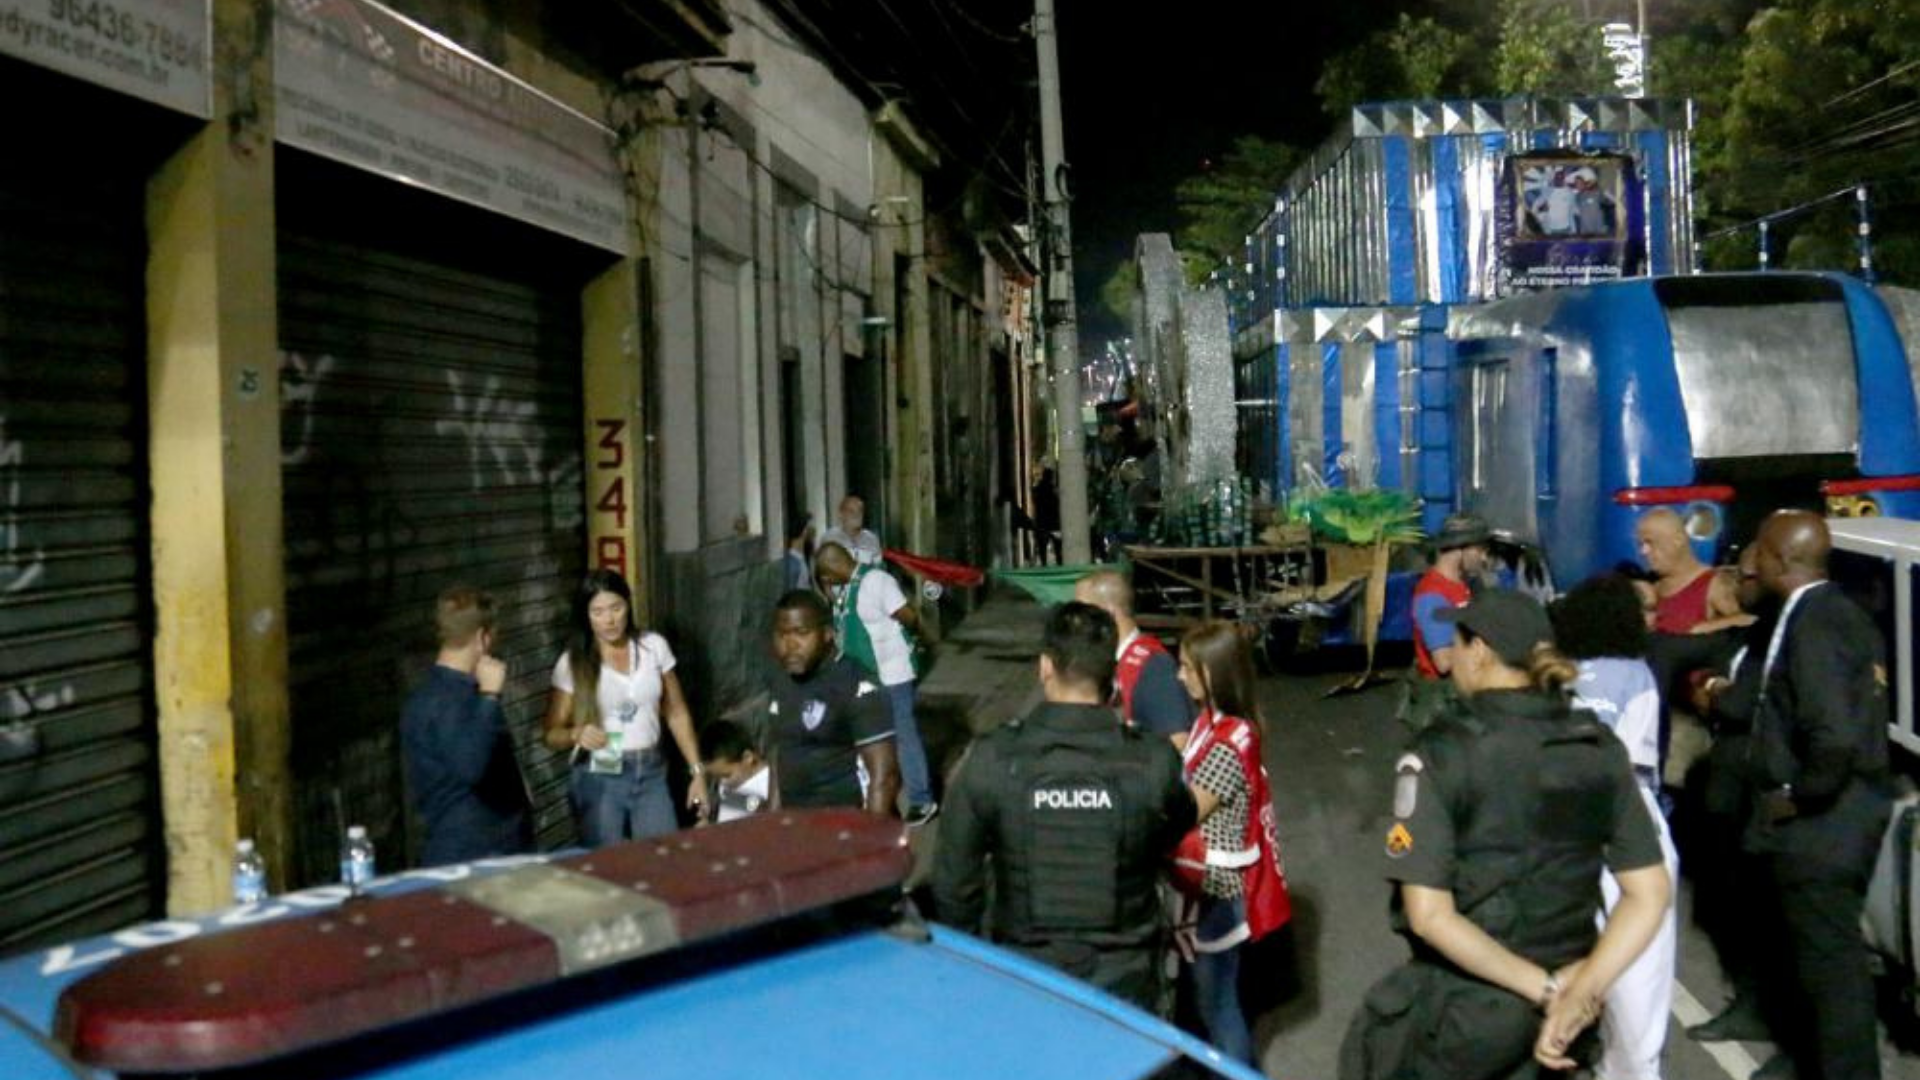 Foto da região do Sambódromo com policial ao lado.